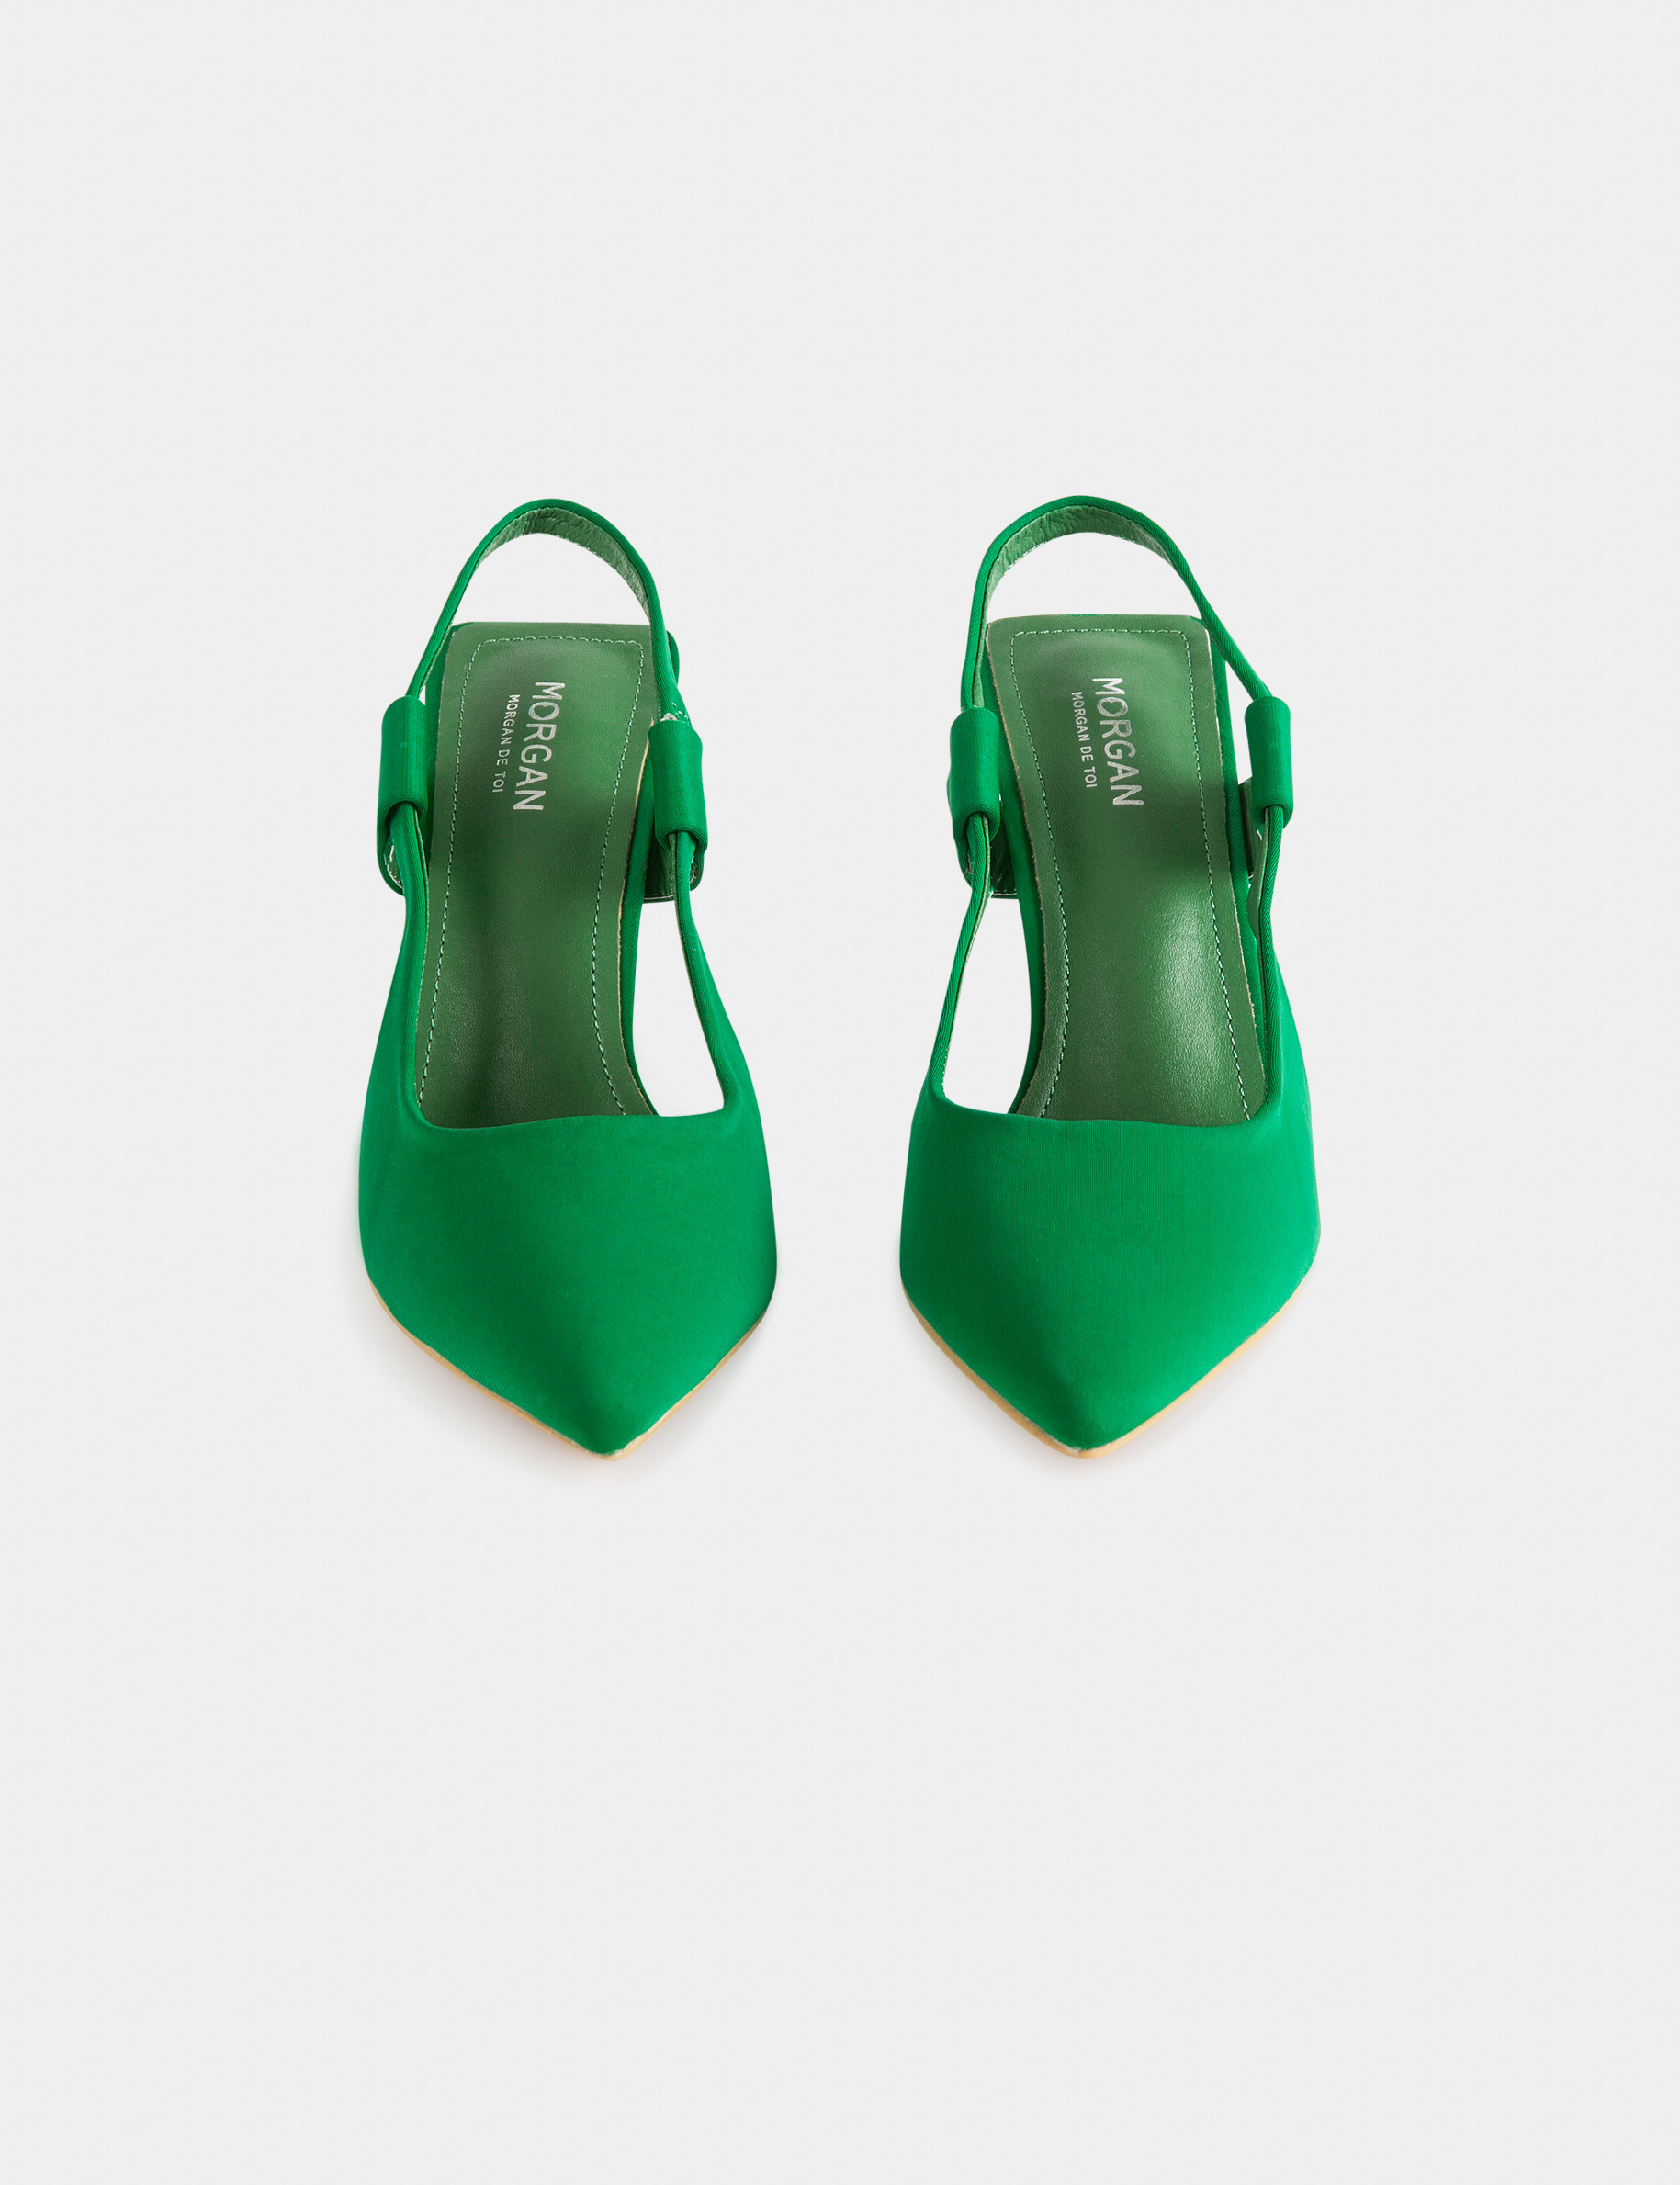 Jezebel - Women Heel Shoes In Green & Gold | JULKÉ